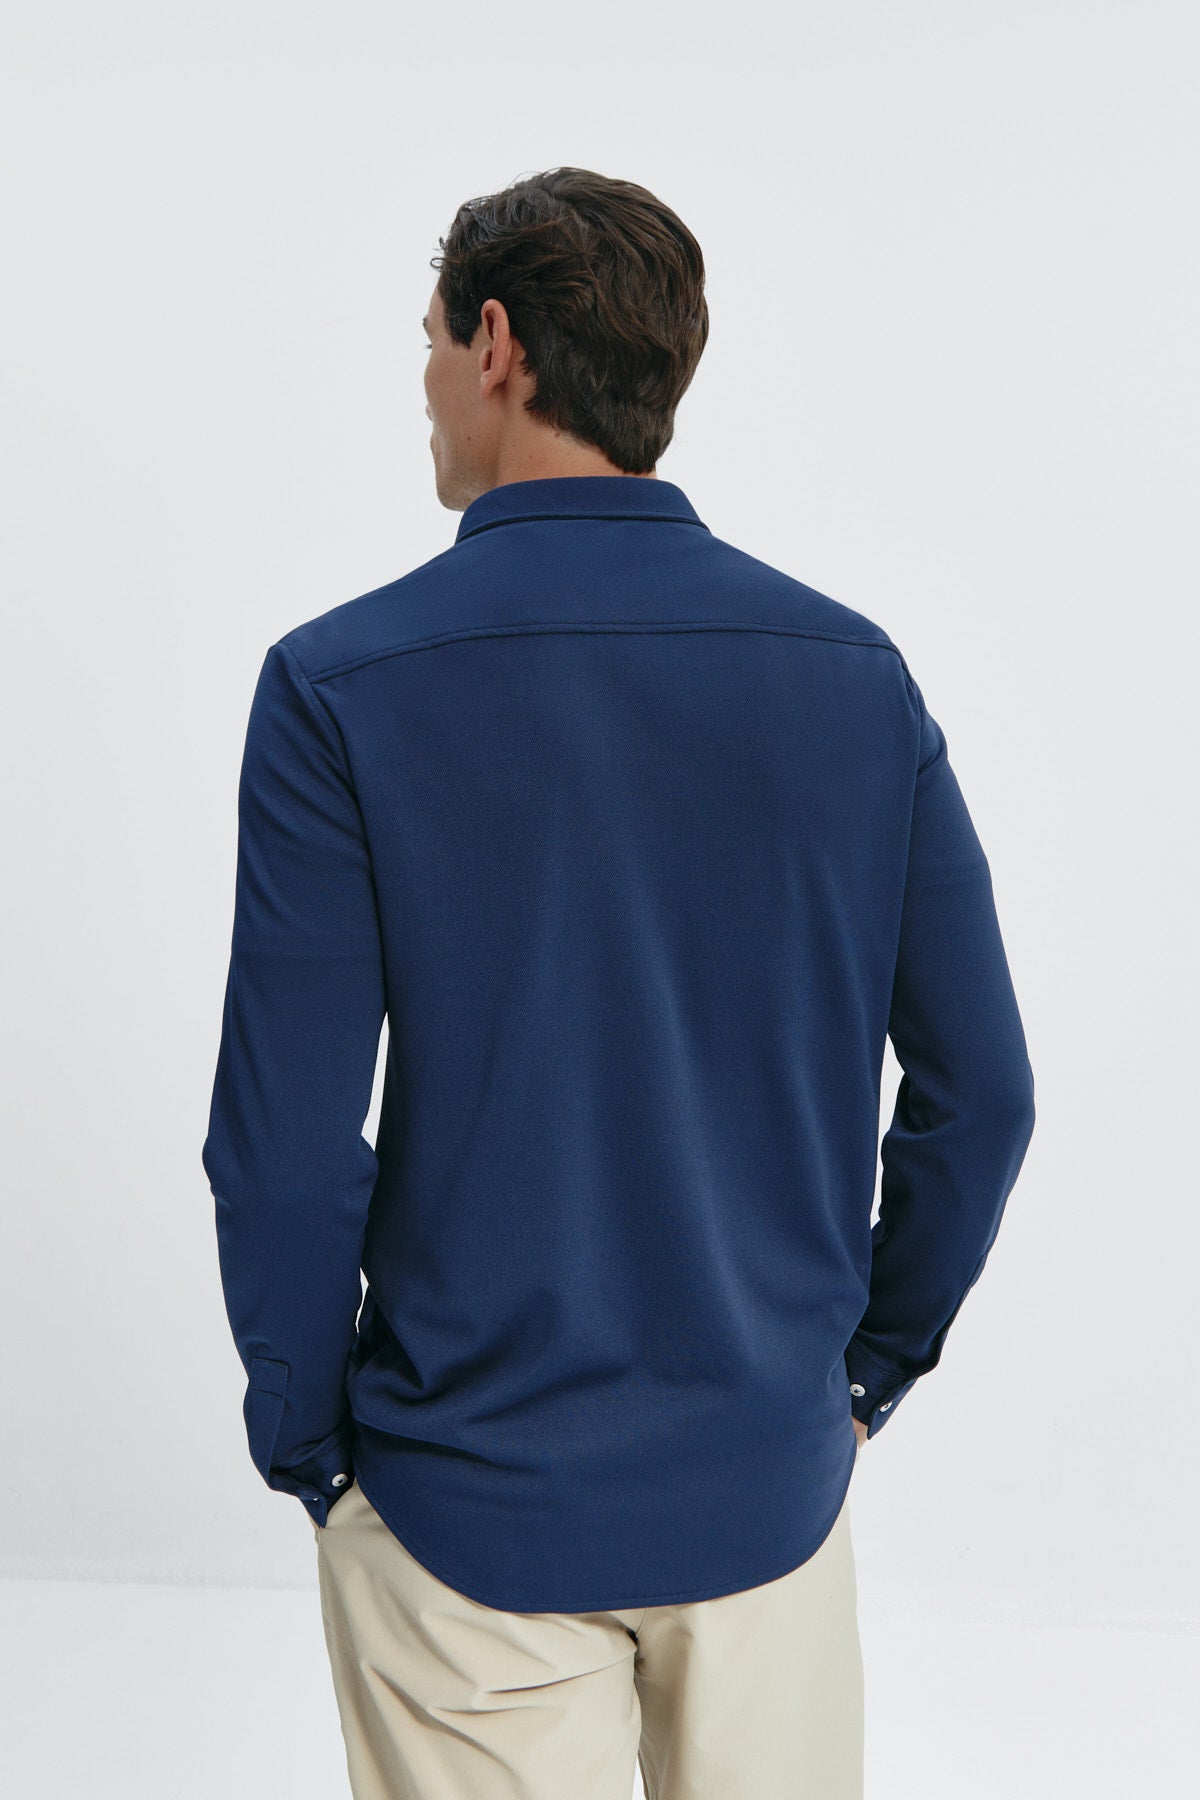 Camisa casual azul para hombre sin arrugas ni manchas. Manga larga, antiarrugas y antimanchas. Foto espalda